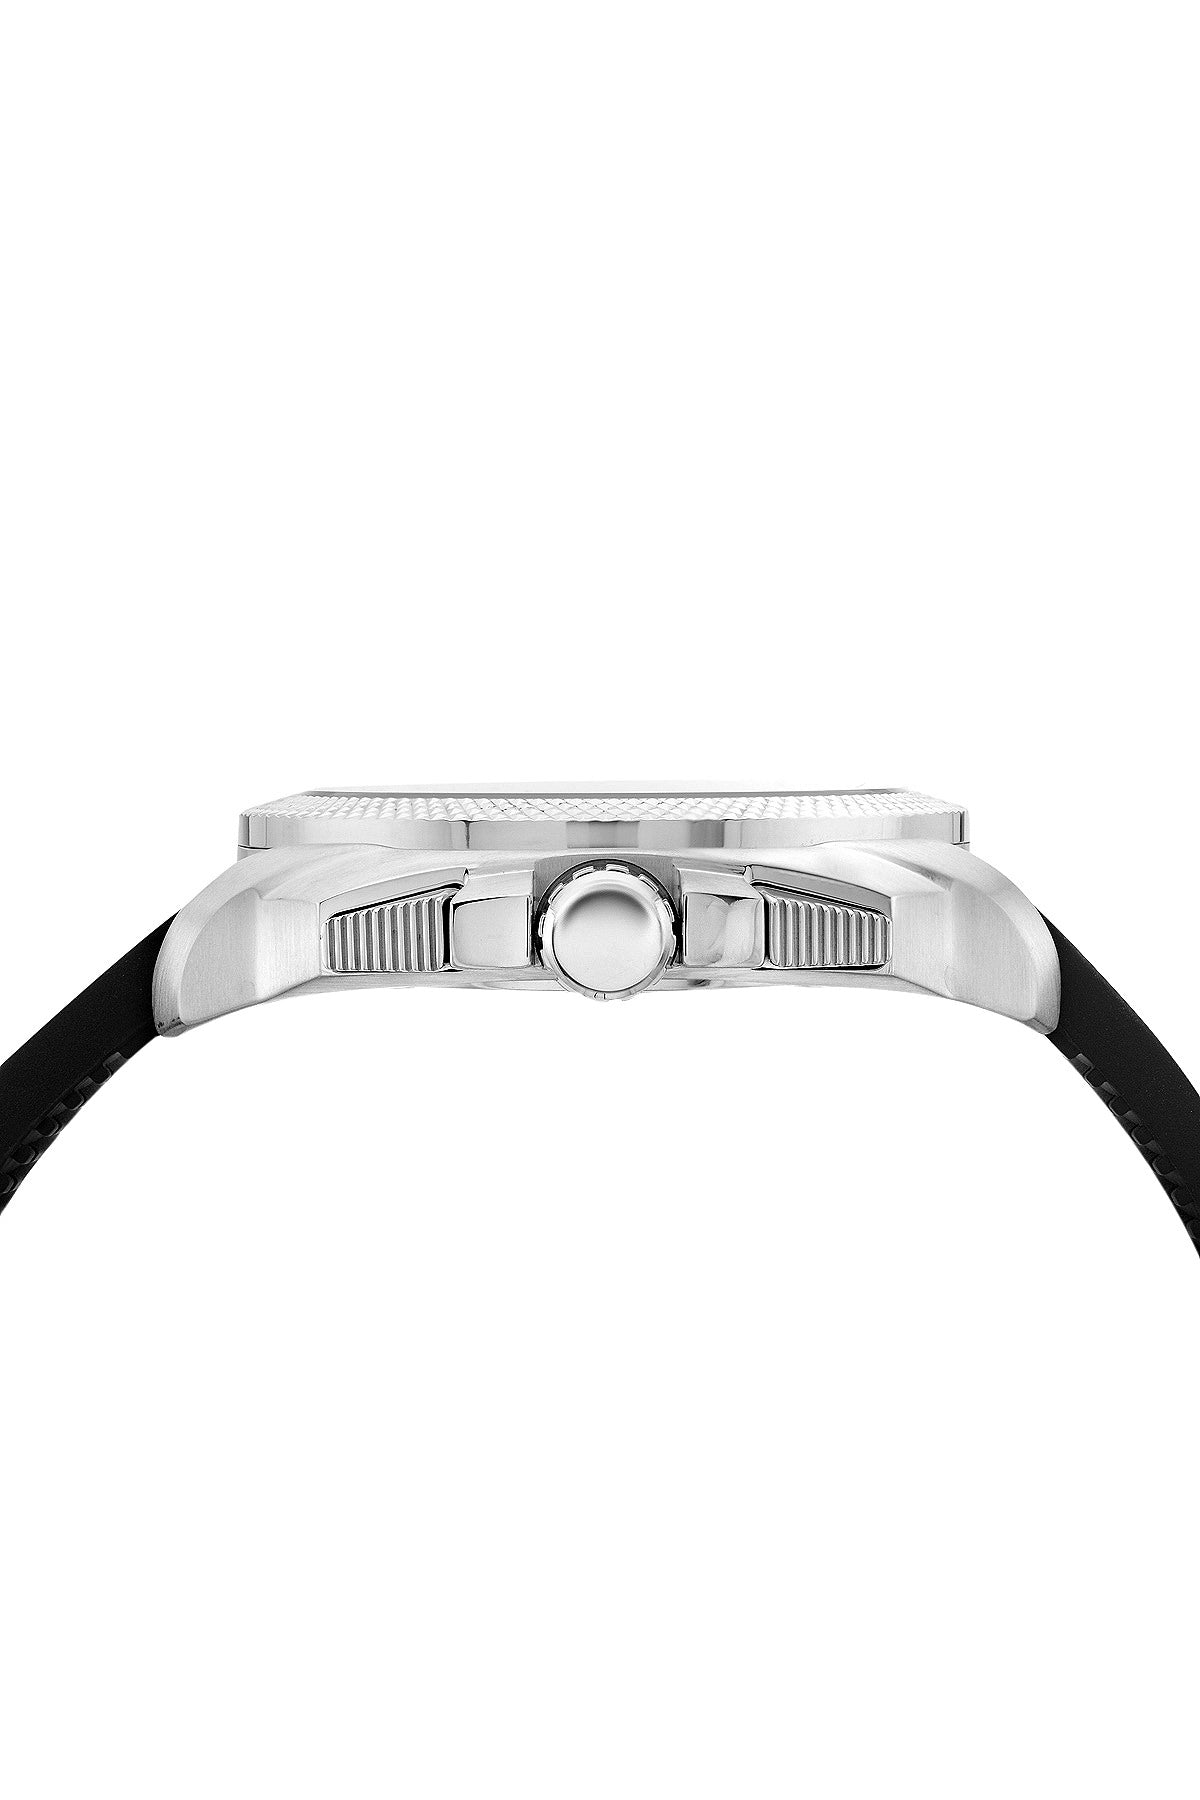 Porsamo Bleu Niccolo luxury chronograph men's watch, silicone strap, silver, black, green 332ANIR